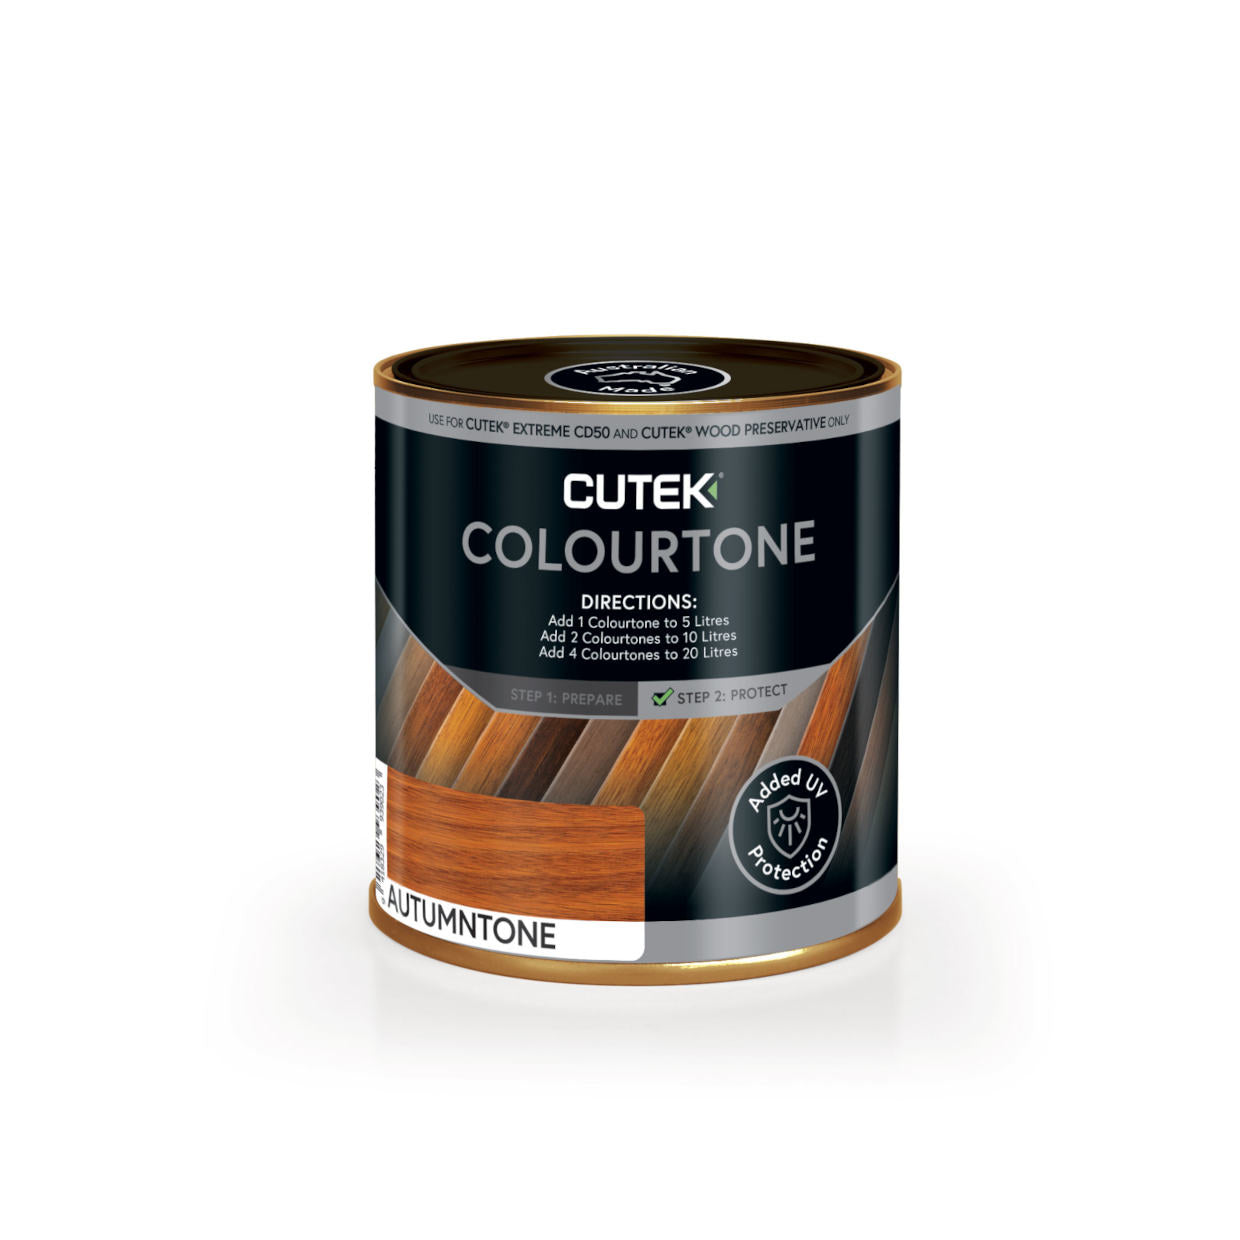    Cutek_Colourtone_Autumntone-DeckingPerth